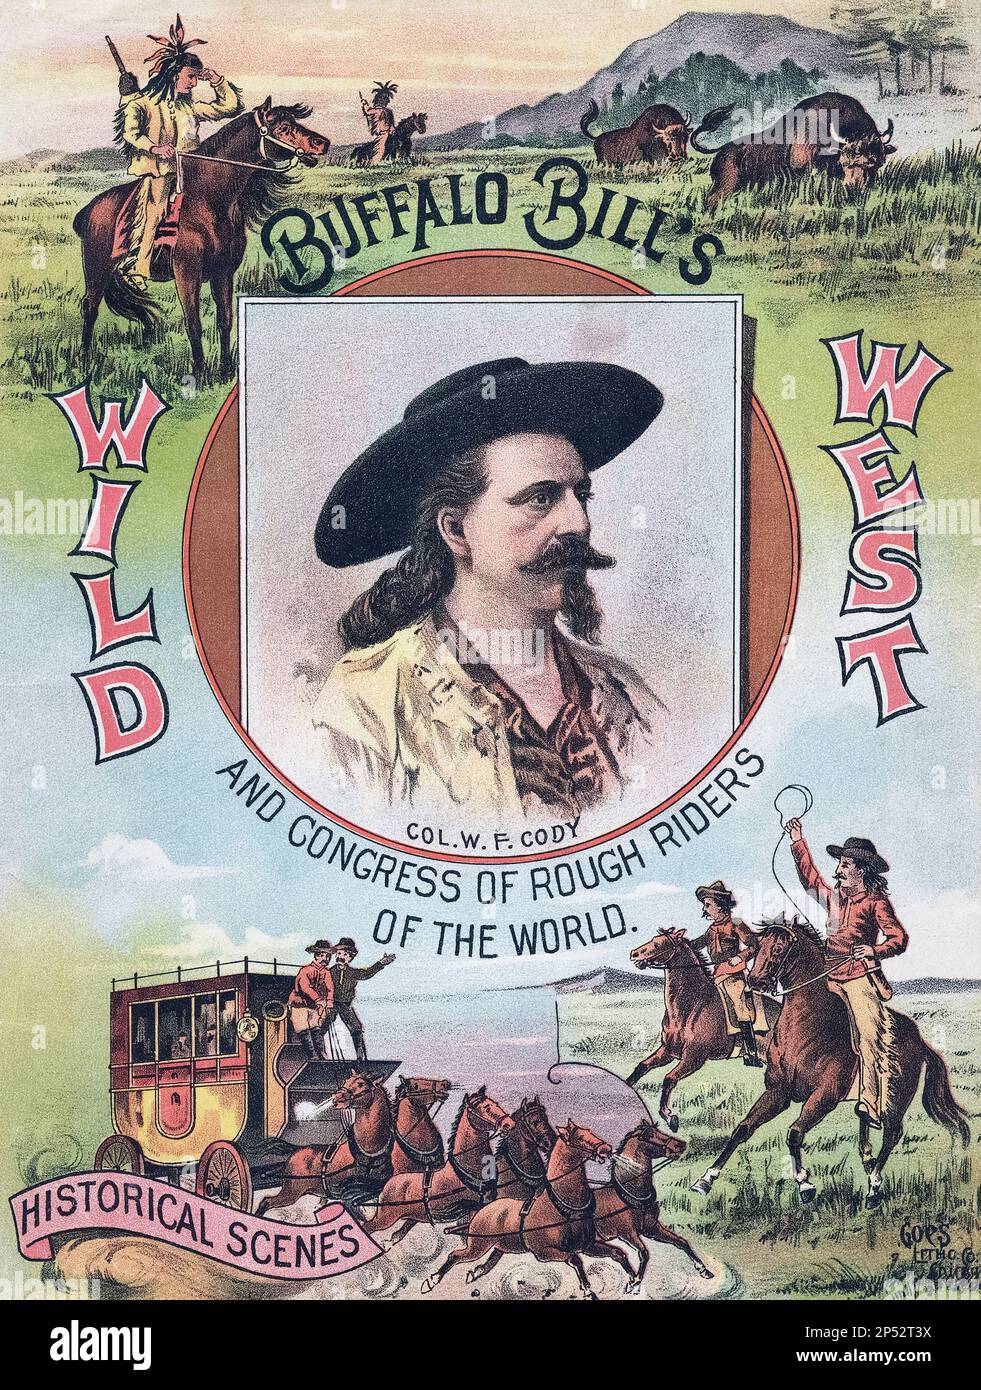 Titelseite von Buffalo Bills Wild West und Congress of Rough Rider's of the World. Die 76 Seiten umfassende Broschüre wurde 1893 veröffentlicht, um Buffalo Bills Wild West Show zu bewerben, die neben dem Gelände der World's Columbian Exposition stattfand, einer Weltausstellung in Chicago. Illustrationen eines unbekannten Künstlers. Stockfoto